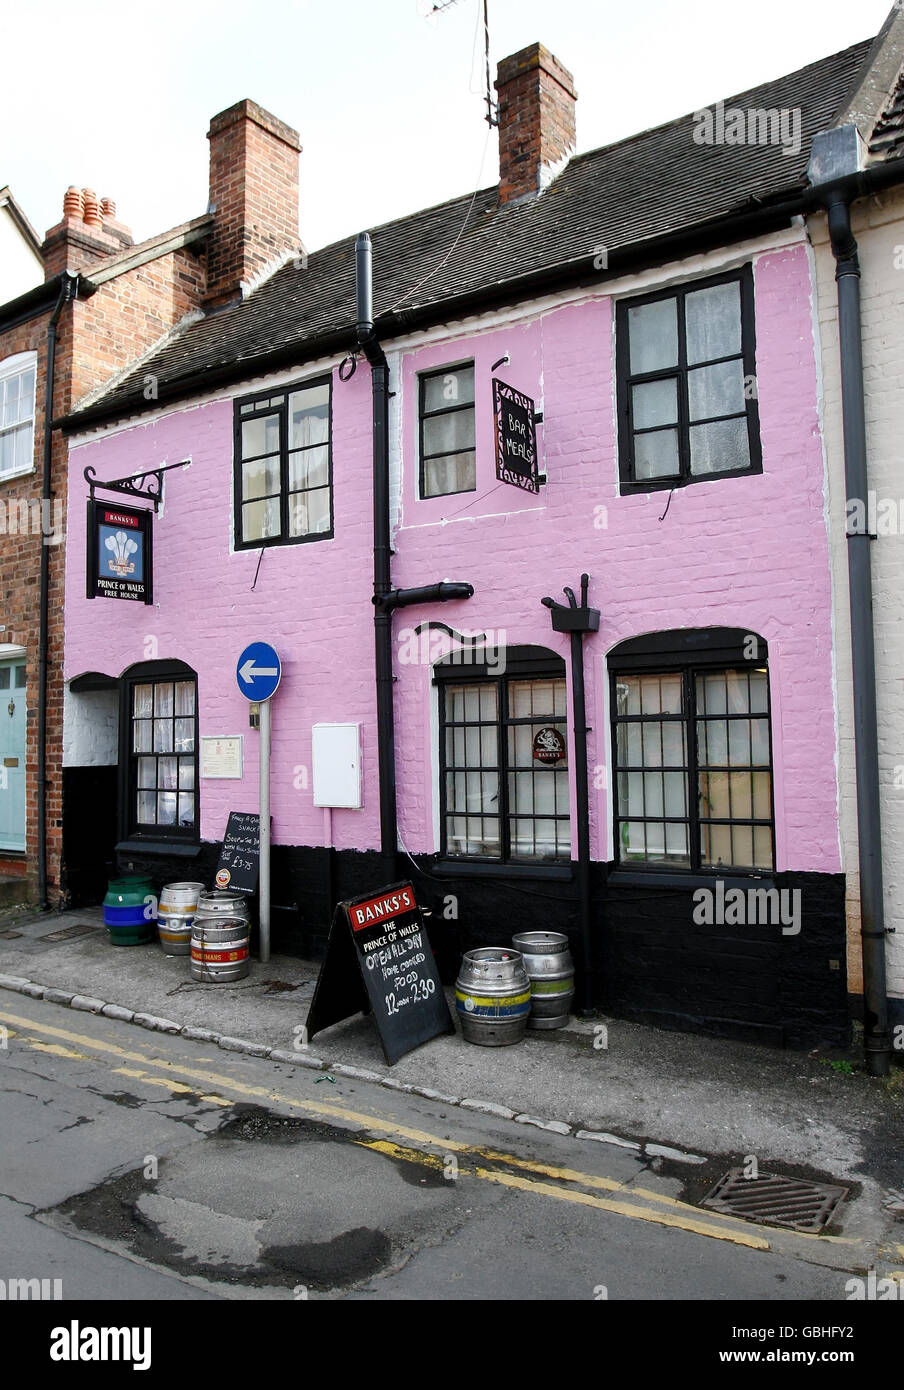 Pub pintado de rosa. El pub Prince of Wales en Church Lane Ledbury que ha sido pintado de color rosa por los pranksters. Foto de stock